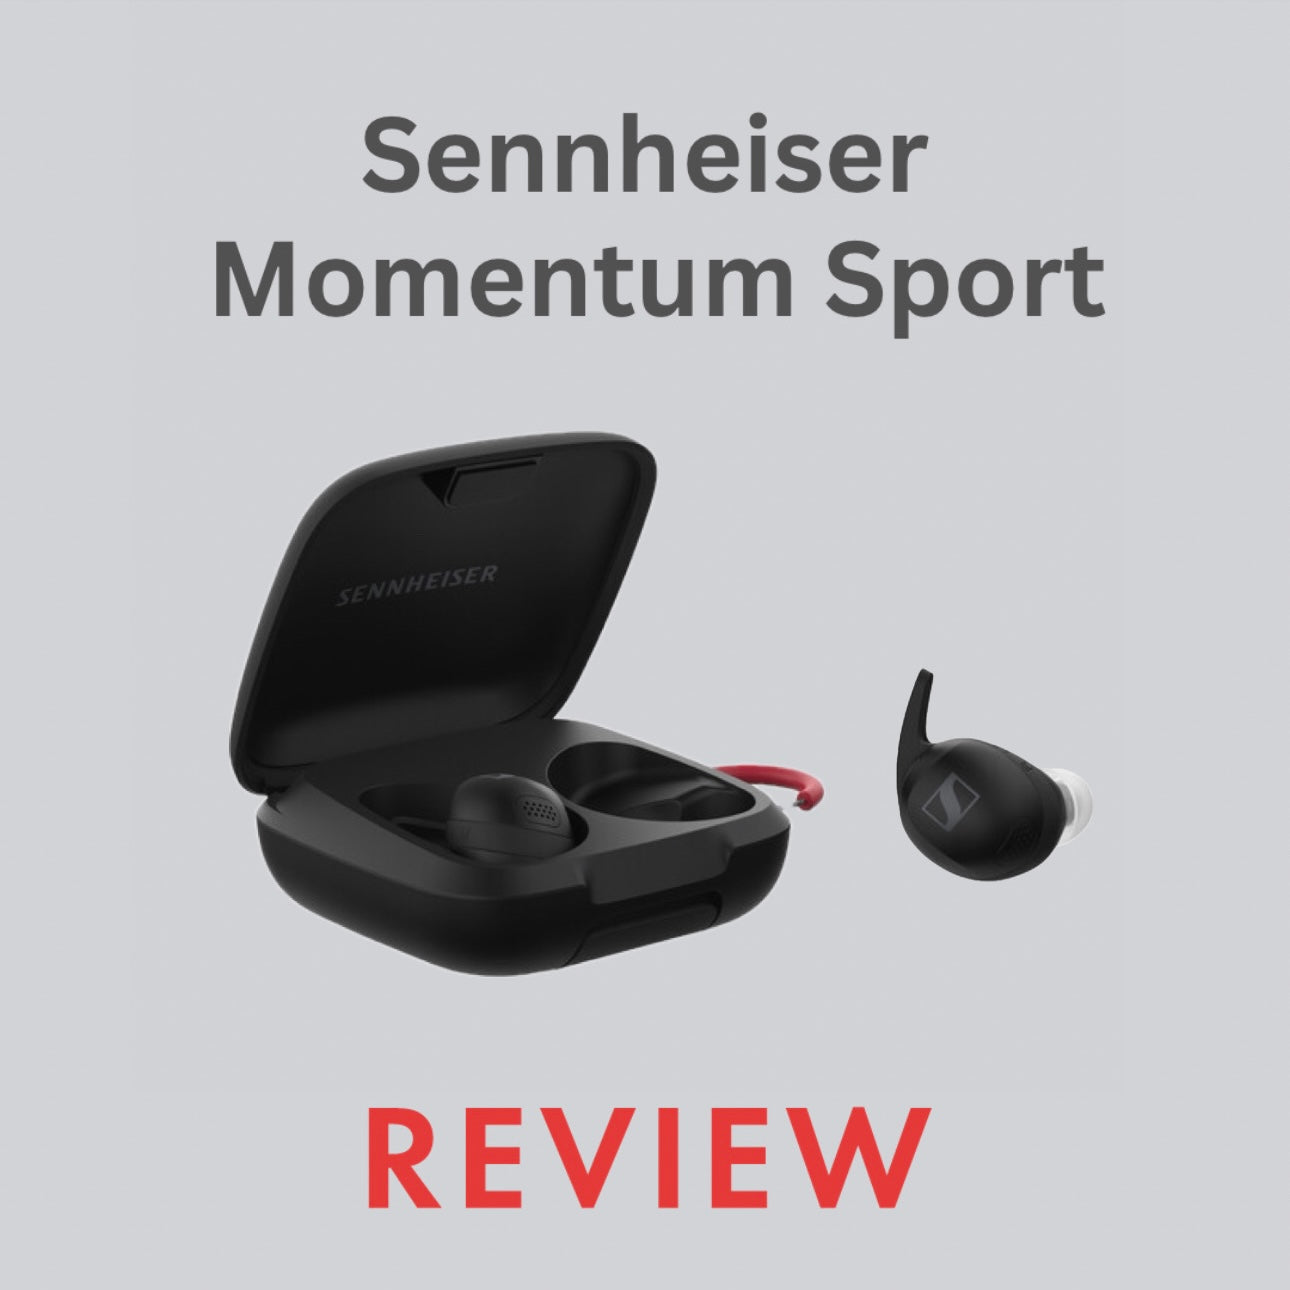 Sennheiser Momentum Sport Review